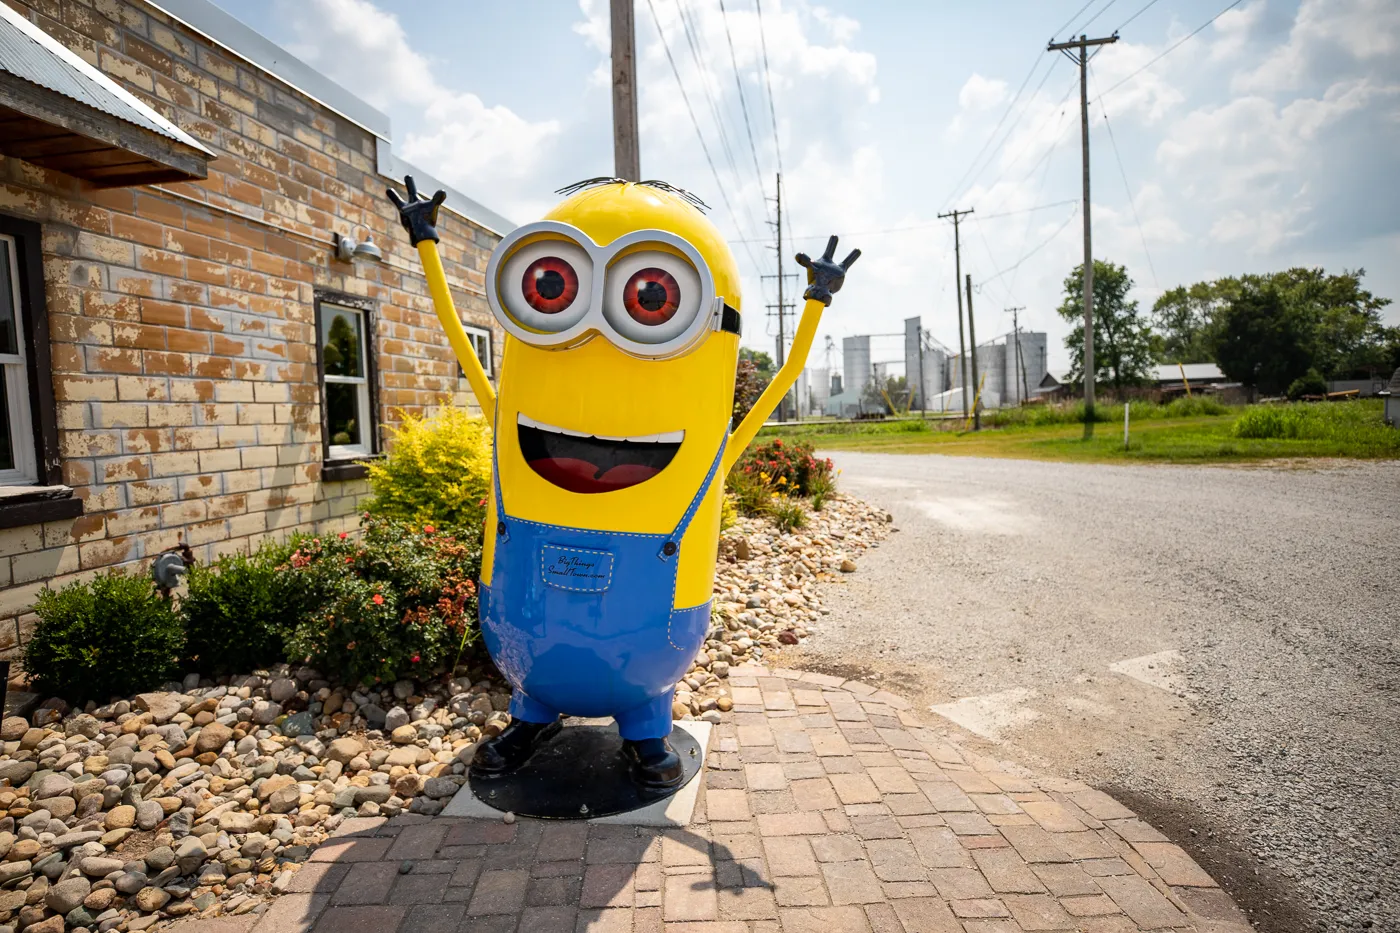 Big Minion in Casey, Illinois roadside attraction